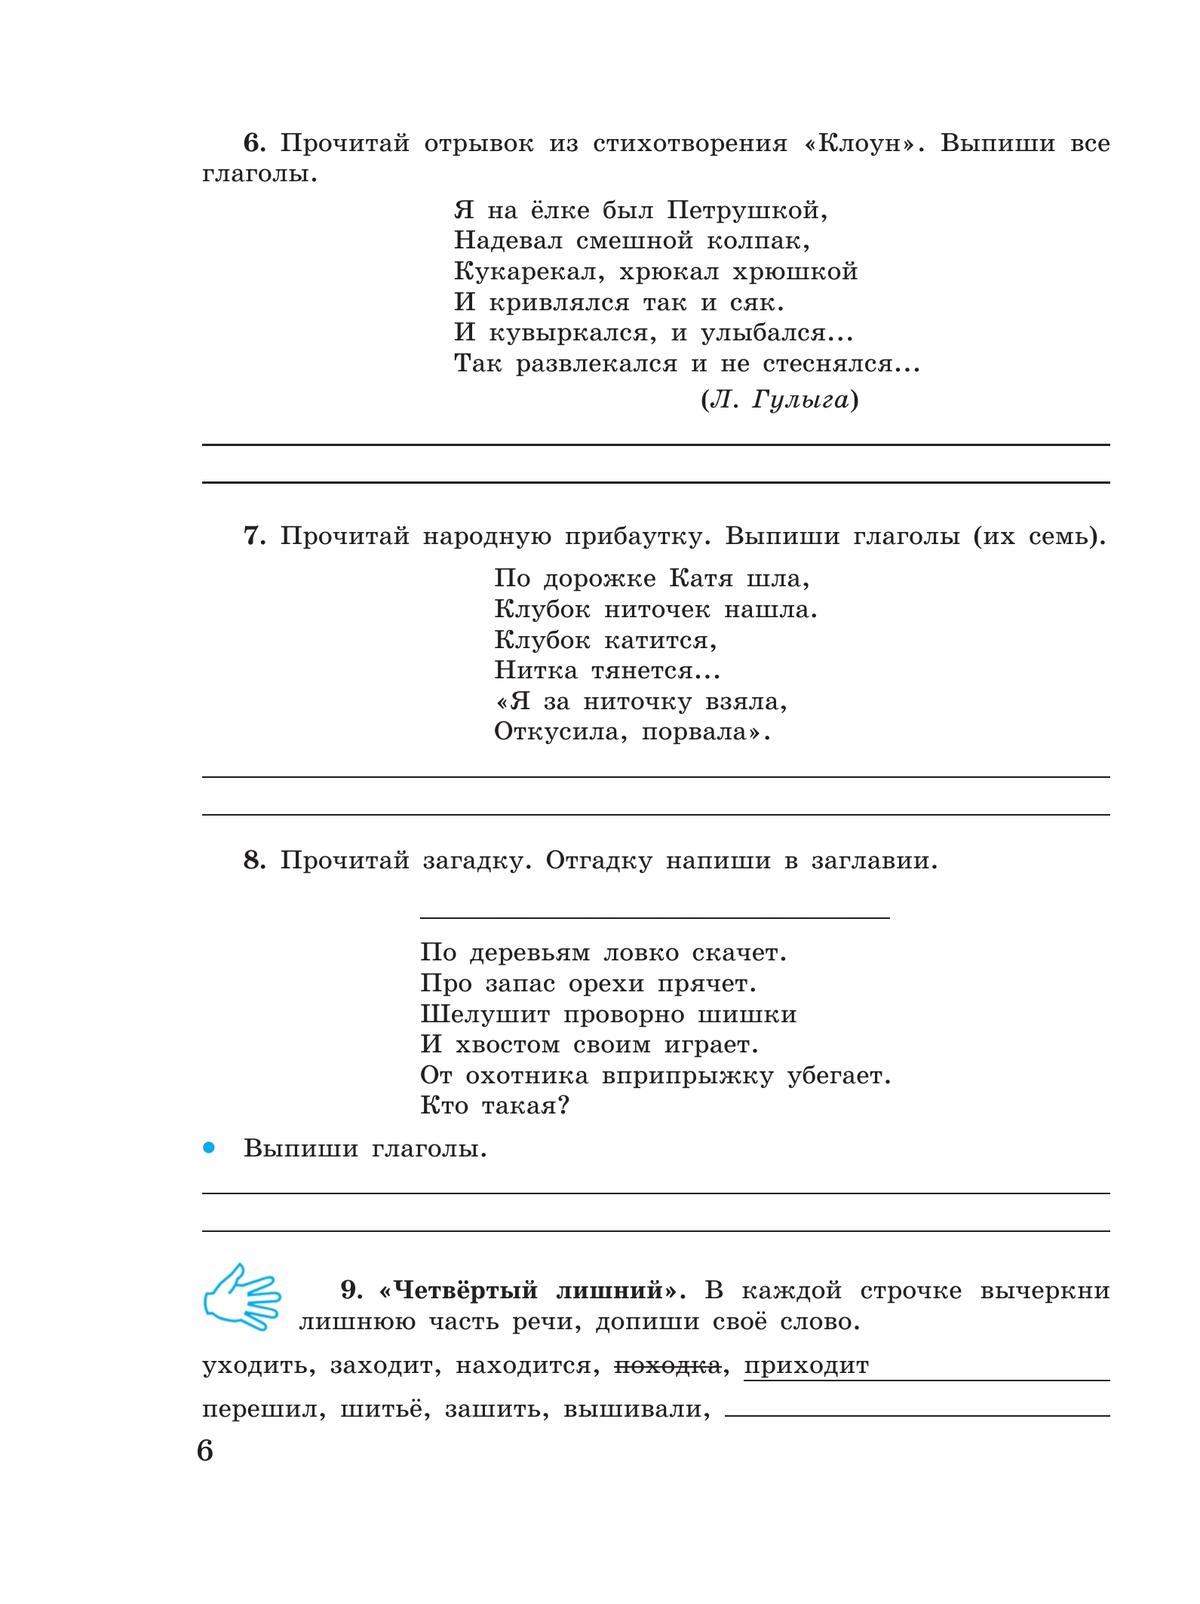 Русский язык. Глагол. 5-9 классы. Рабочая тетрадь 4 (для обучающихся с интеллектуальными нарушениями) 5